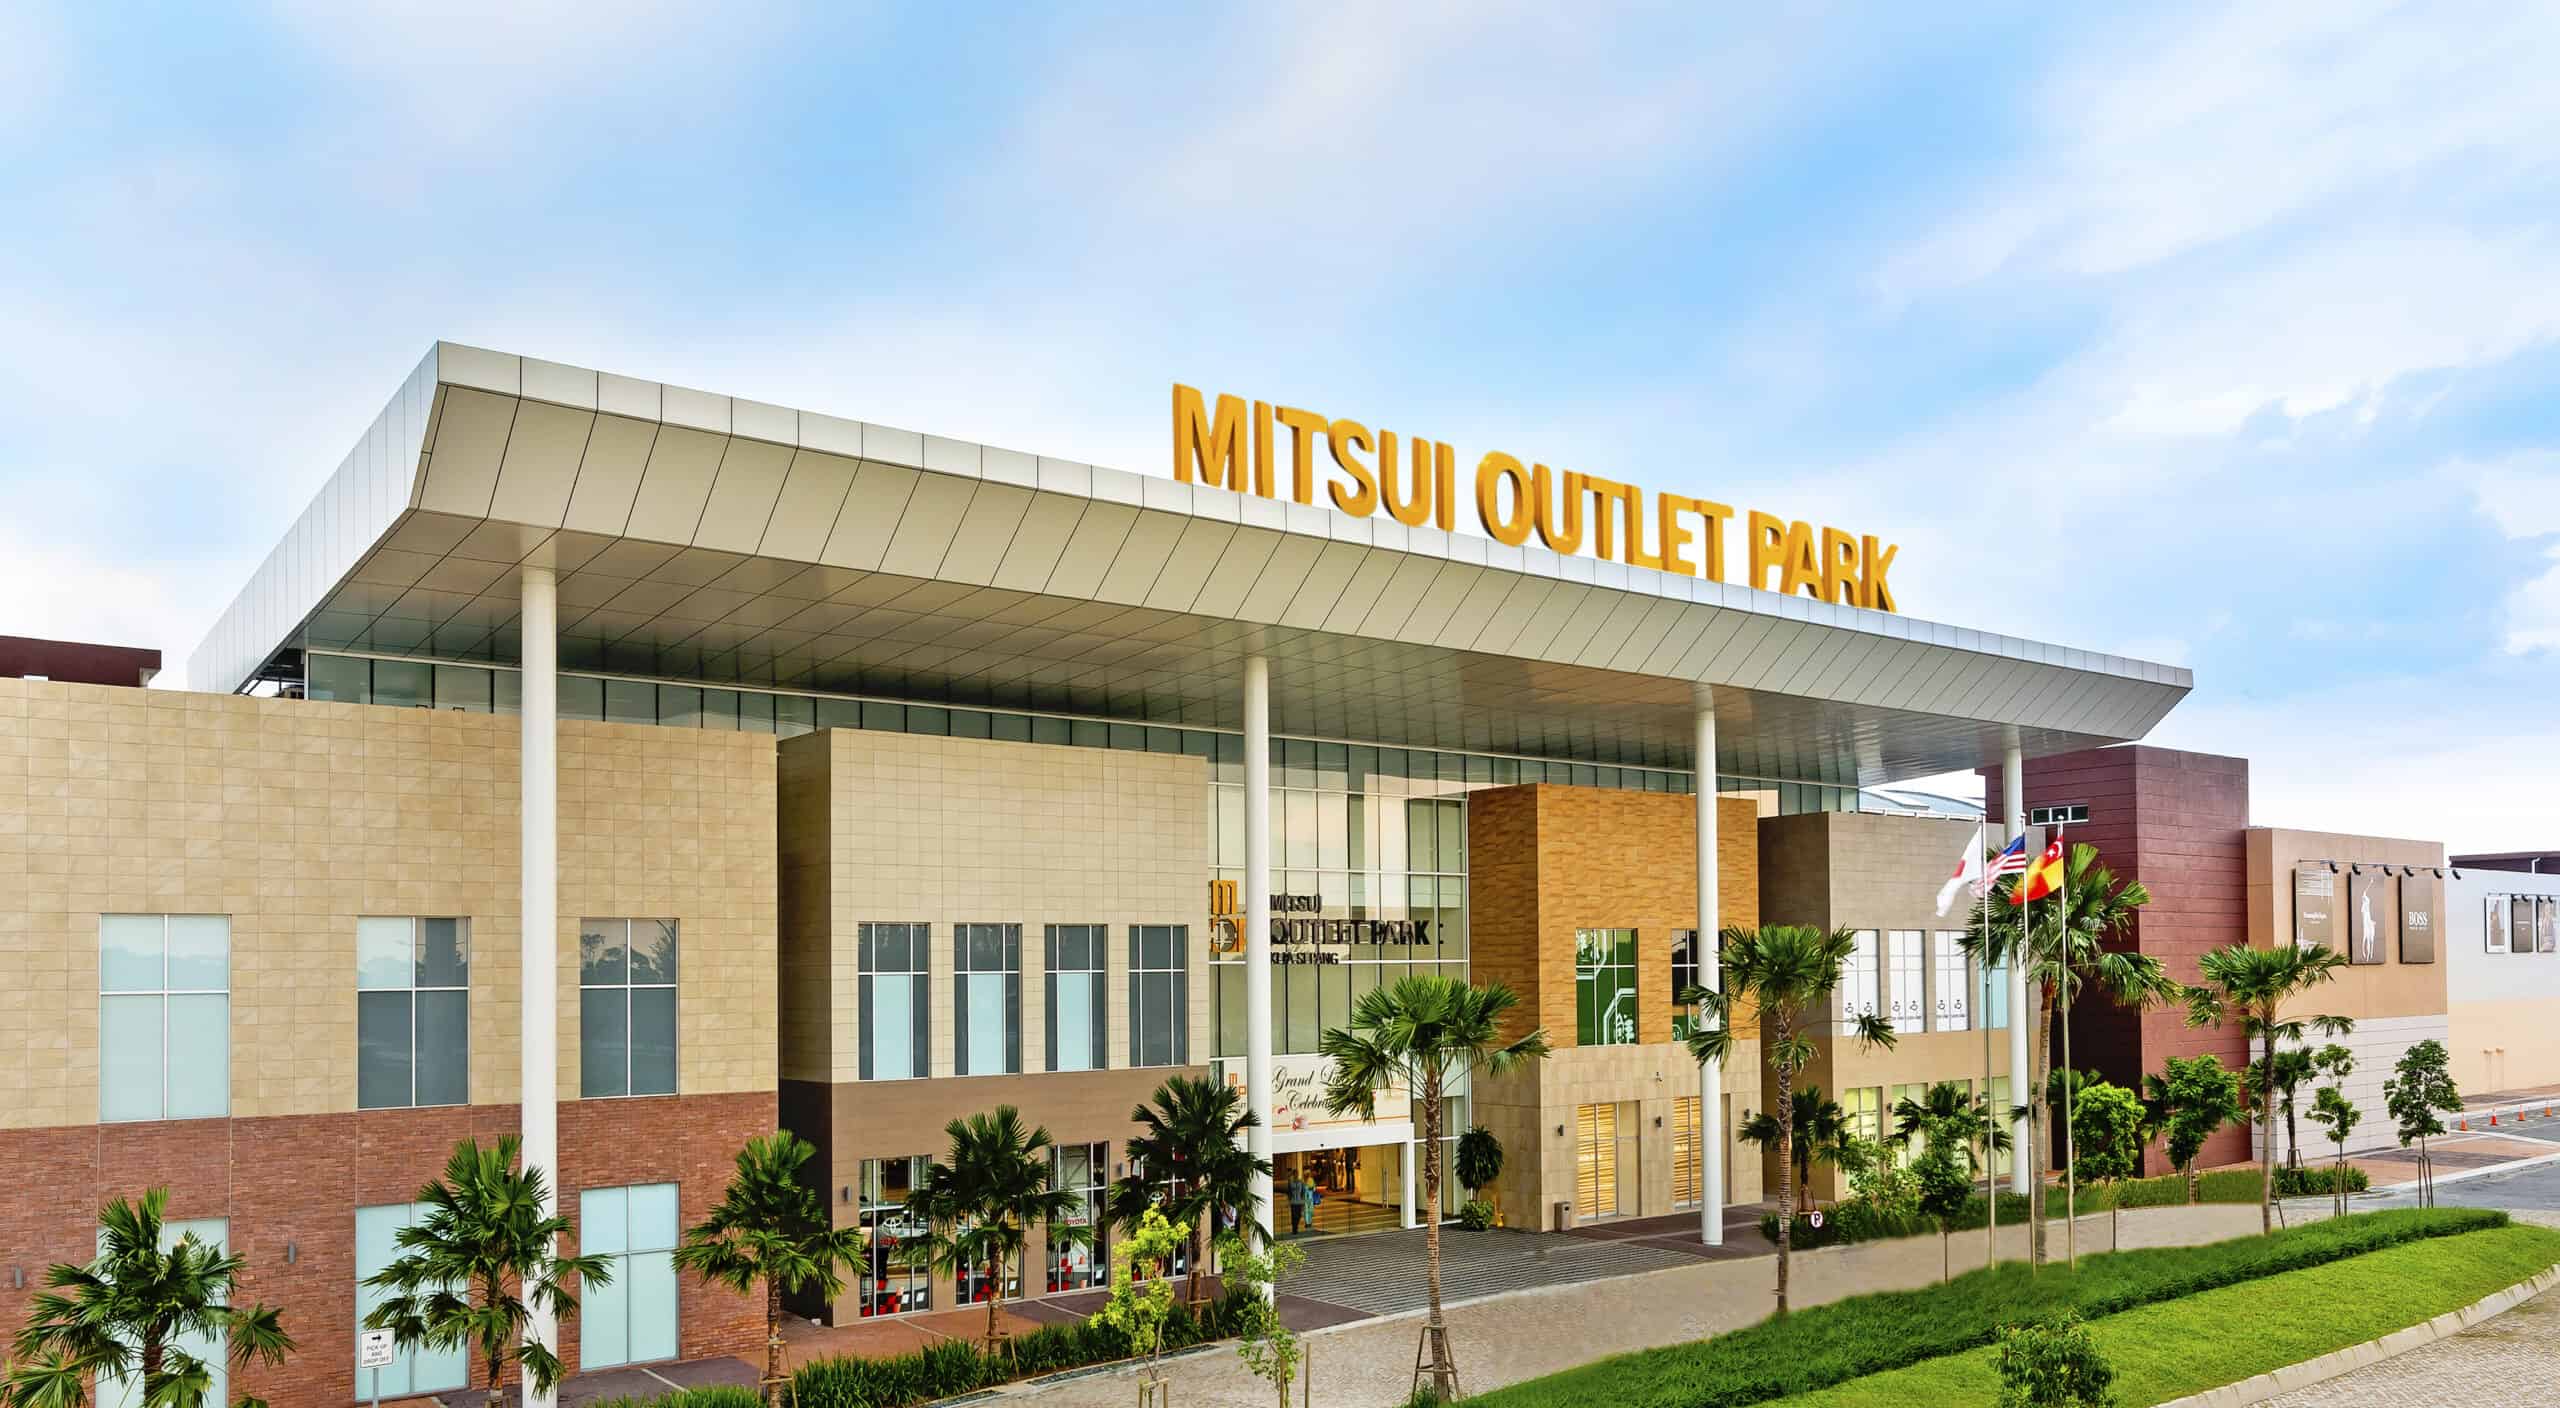 Mitsui Outlet Park KLIA - Thiên đường mua sắm cho du khách